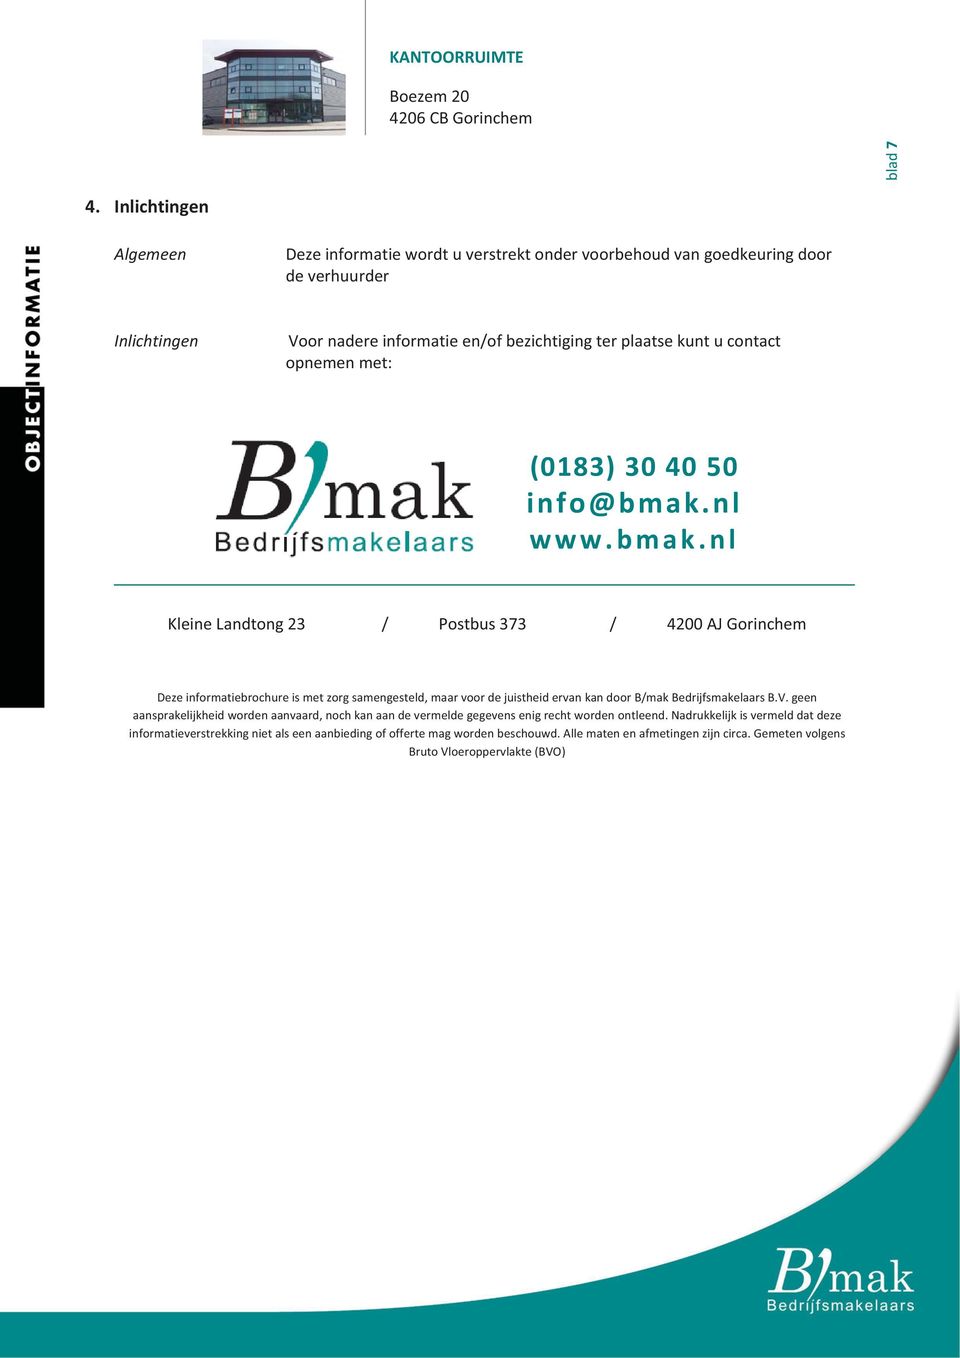 Voornadereinformatieen/ofbezichtigingterplaatsekuntucontact opnemenmet: (0183)304050 info@bmak.